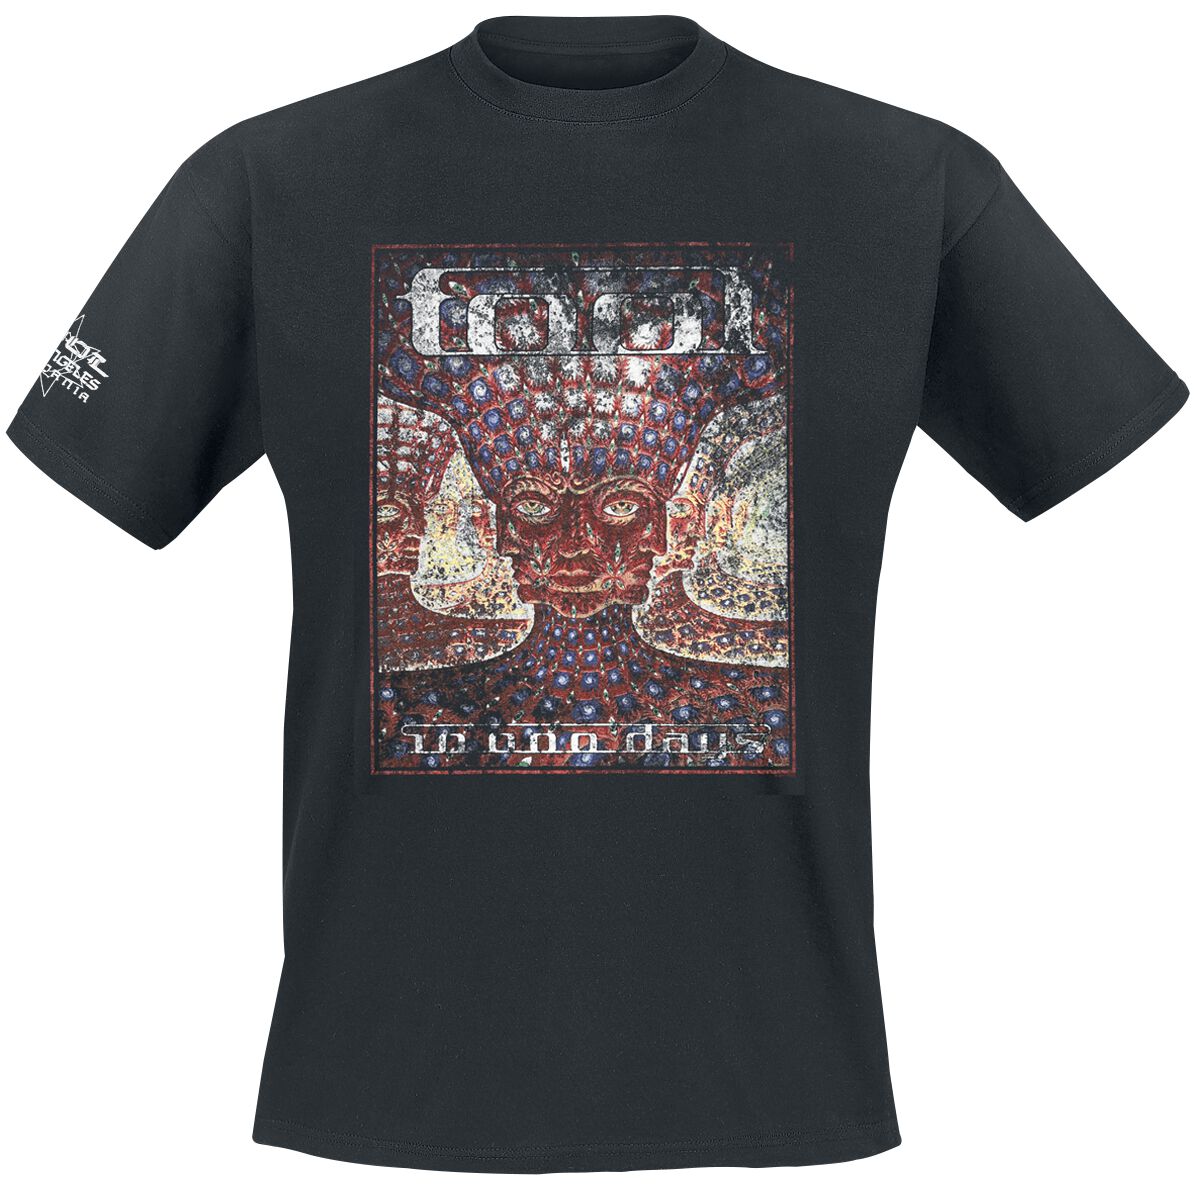 Tool T-Shirt - 10,000 days - S bis XXL - für Männer - Größe XL - schwarz  - Lizenziertes Merchandise!